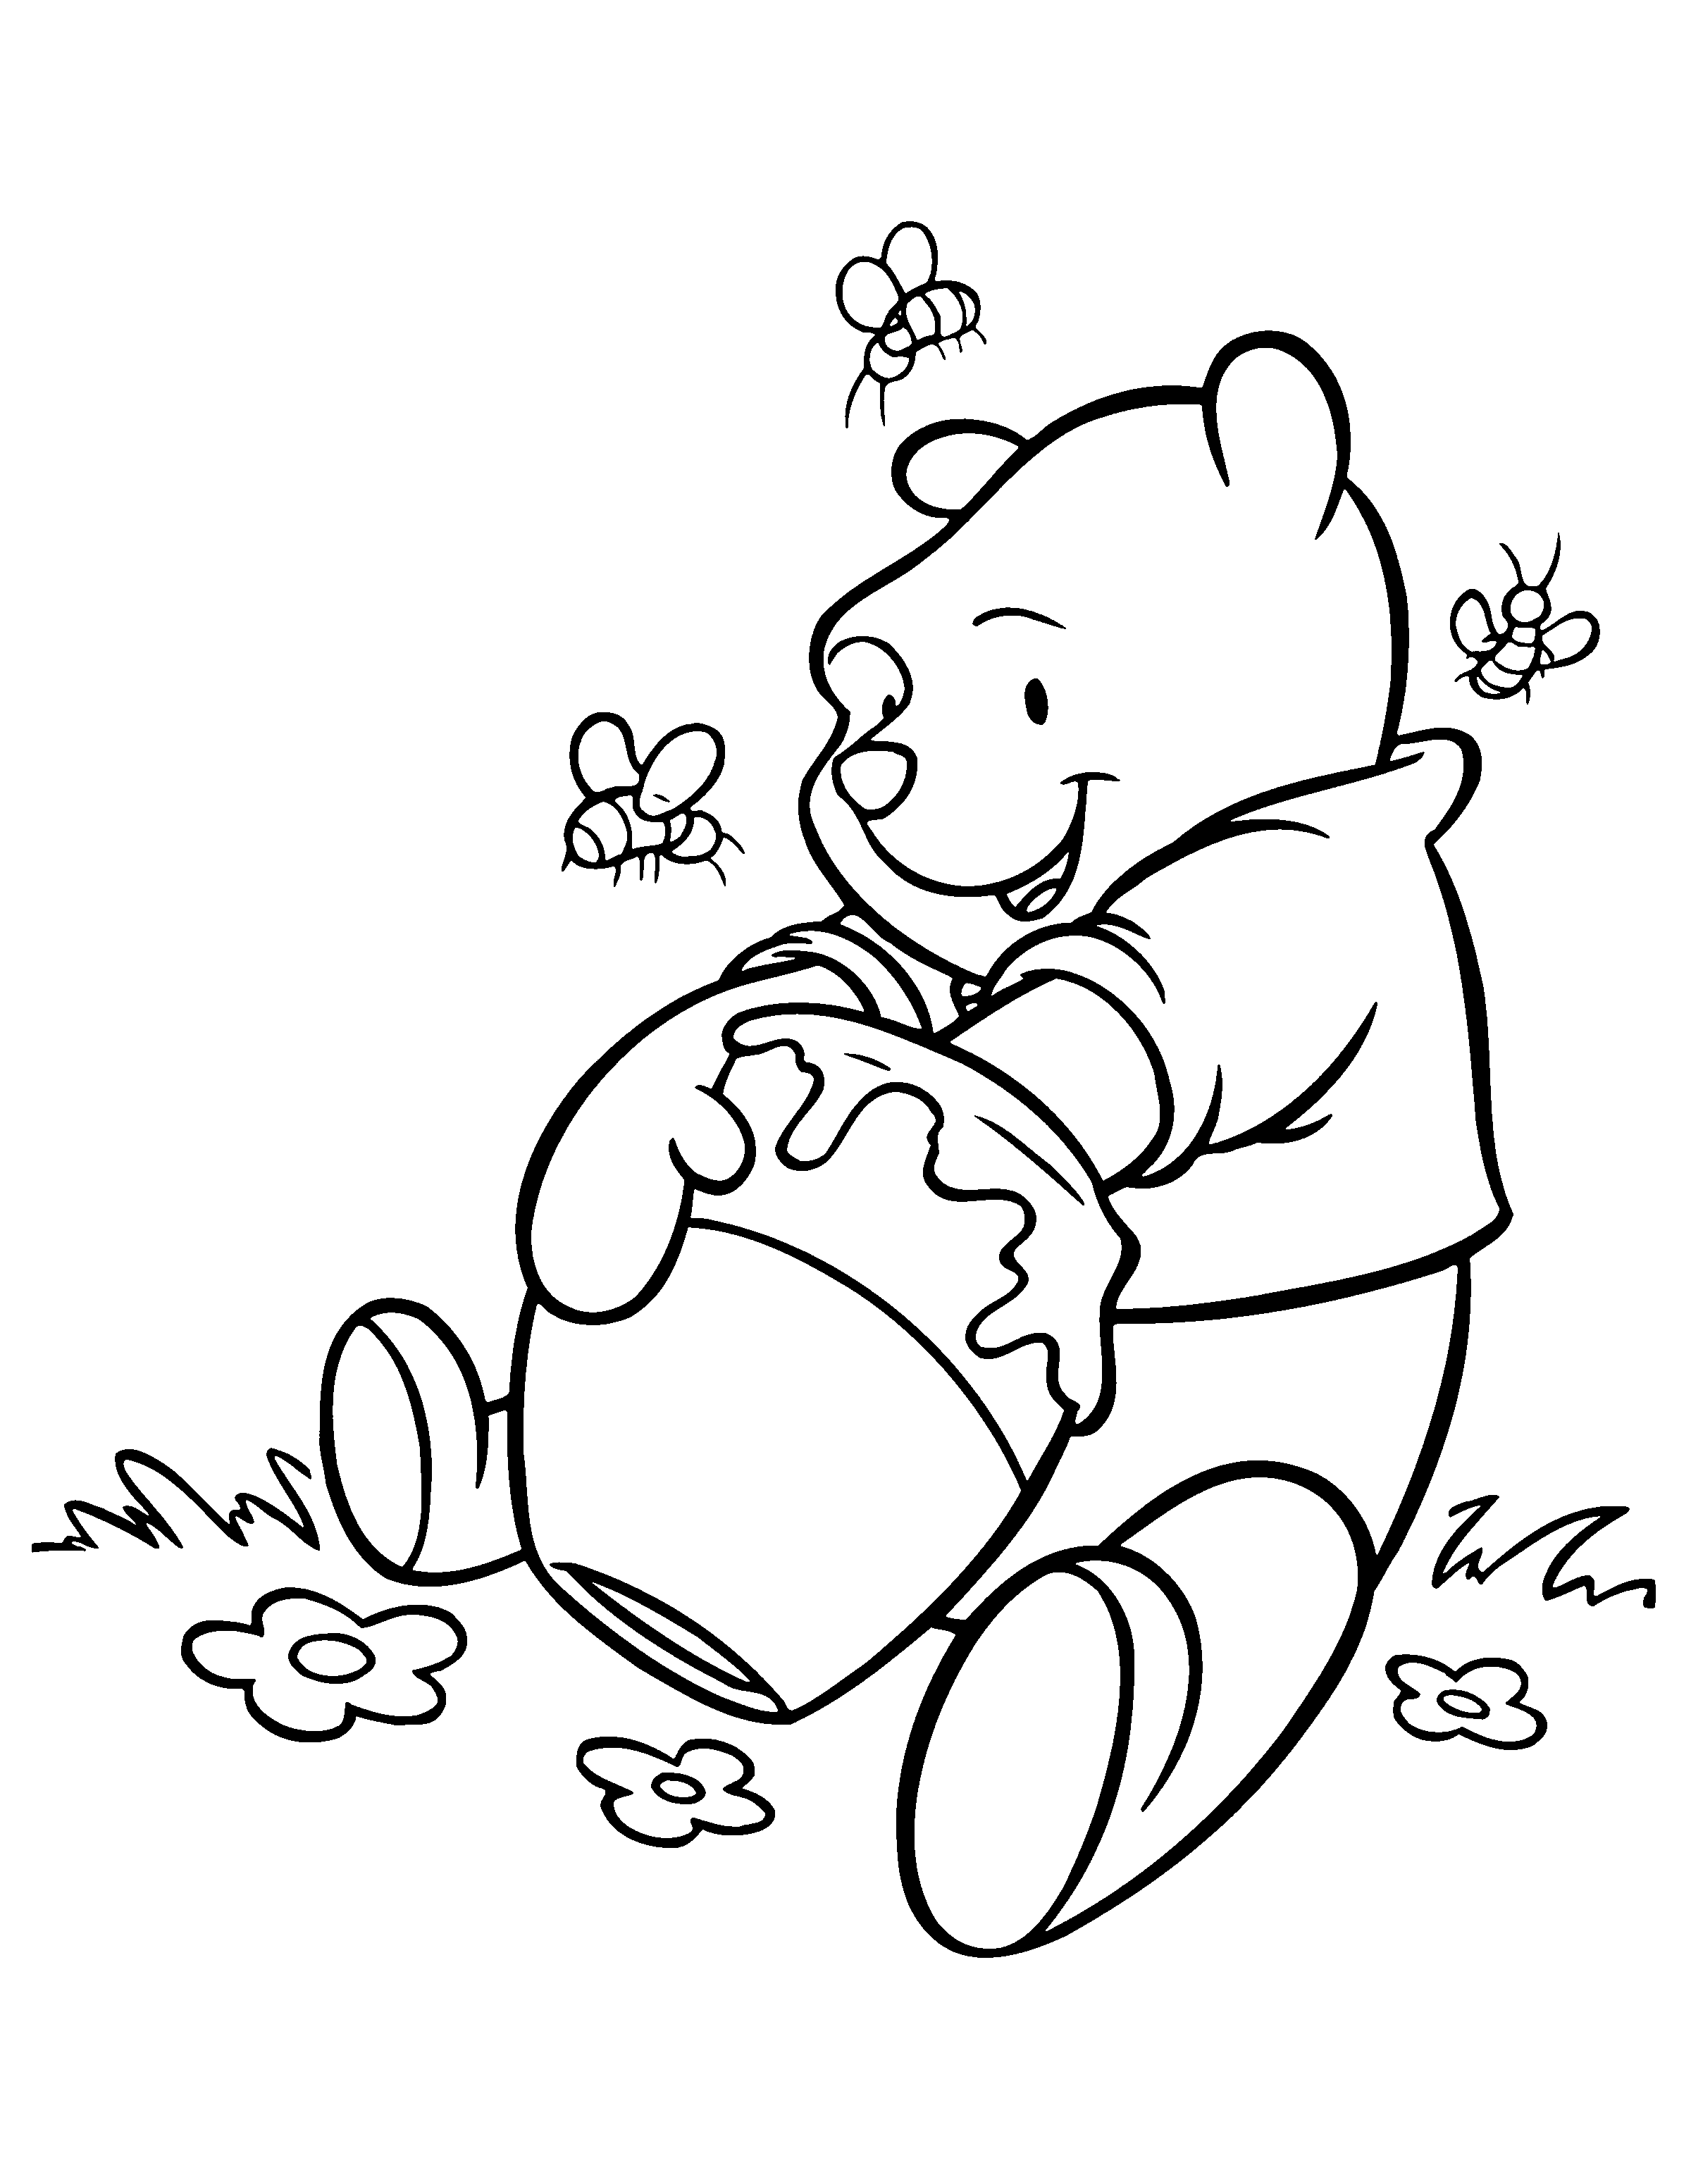 juegos de pintar winnie pooh